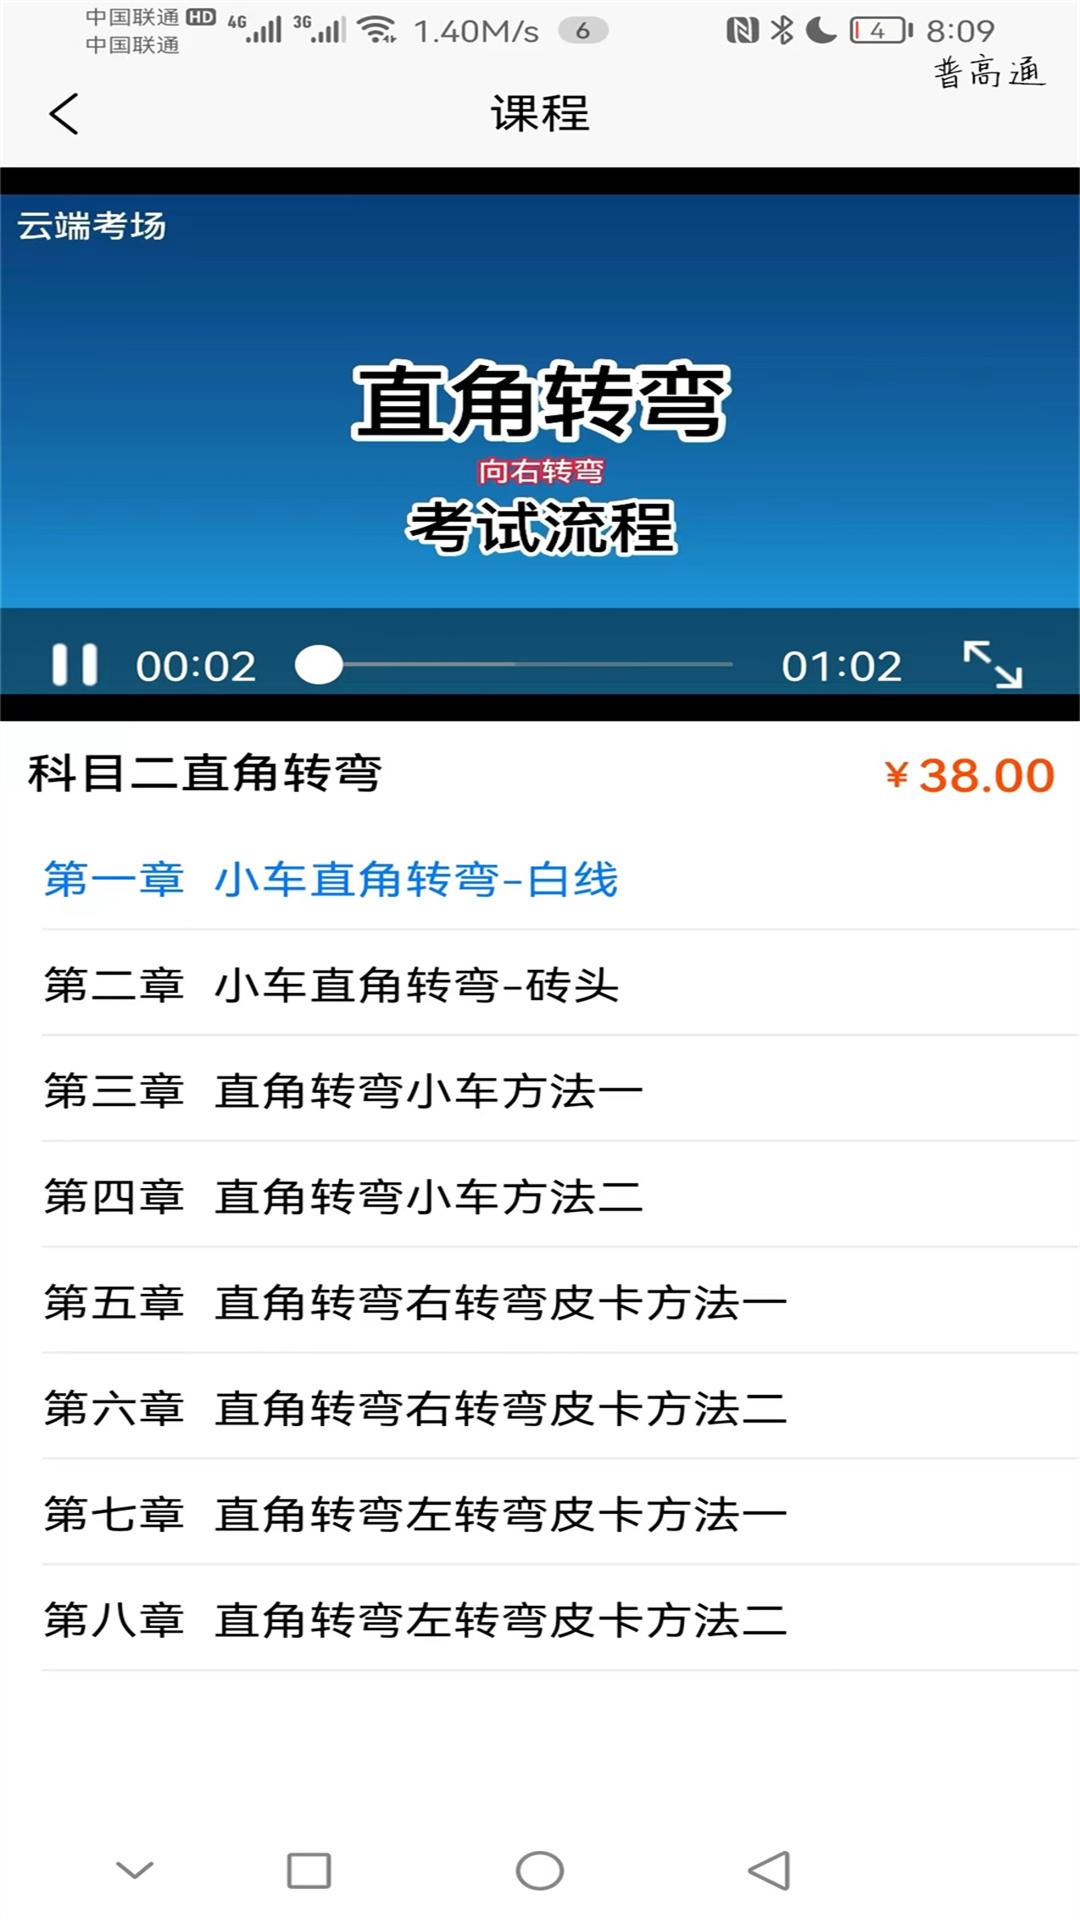 蓝枫网上学车手机软件app